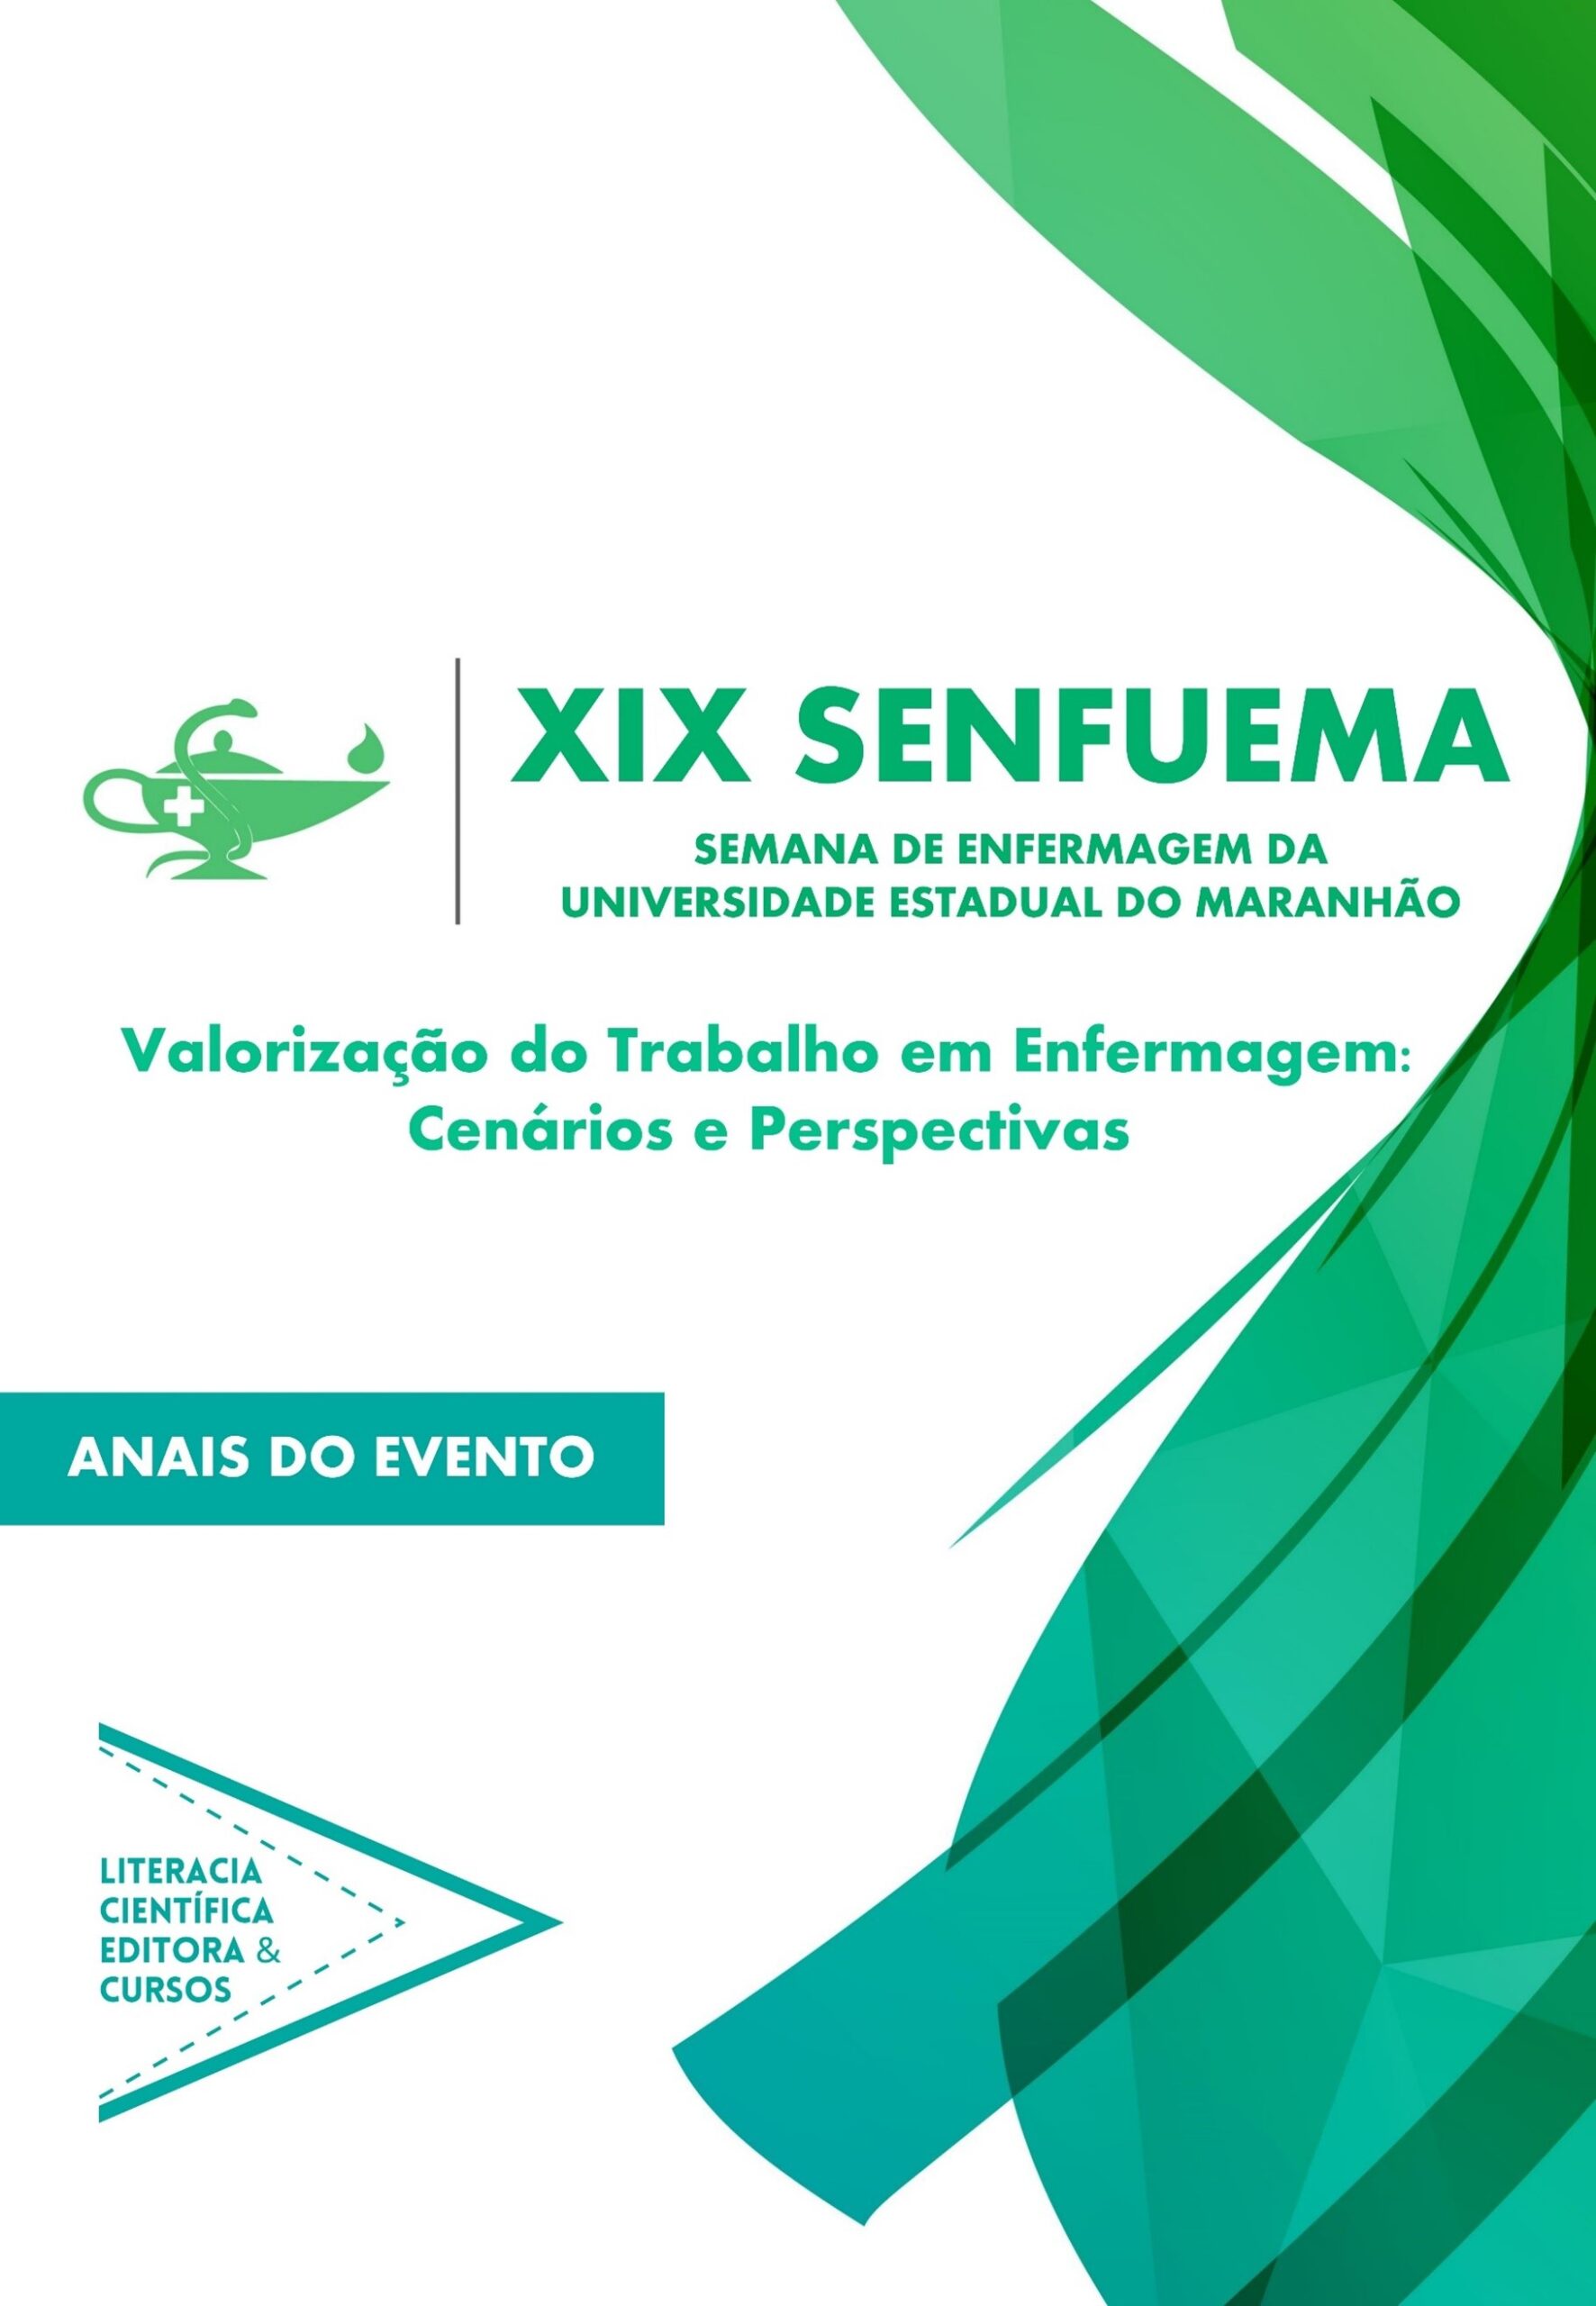 ANAIS DA XIX SEMANA DE ENFERMAGEM DA UNIVERSIDADE ESTADUAL DO MARANHÃO (XIX SENFUEMA)